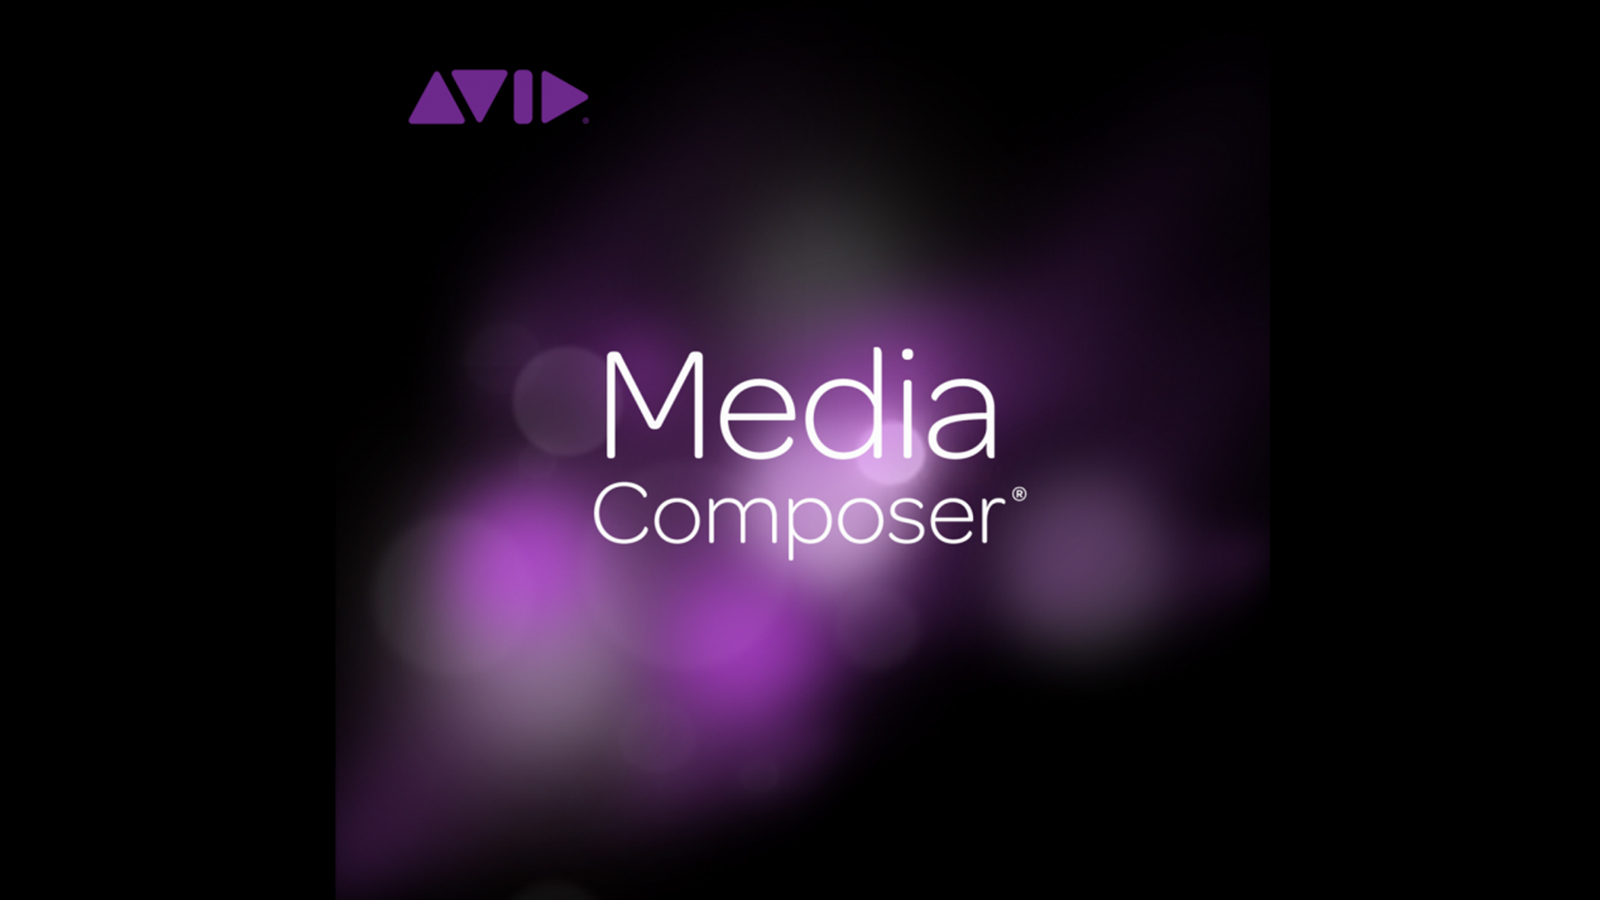 Plasticidad Inclinado Distribuir Avid Announces Free Version of Media Composer | CineD